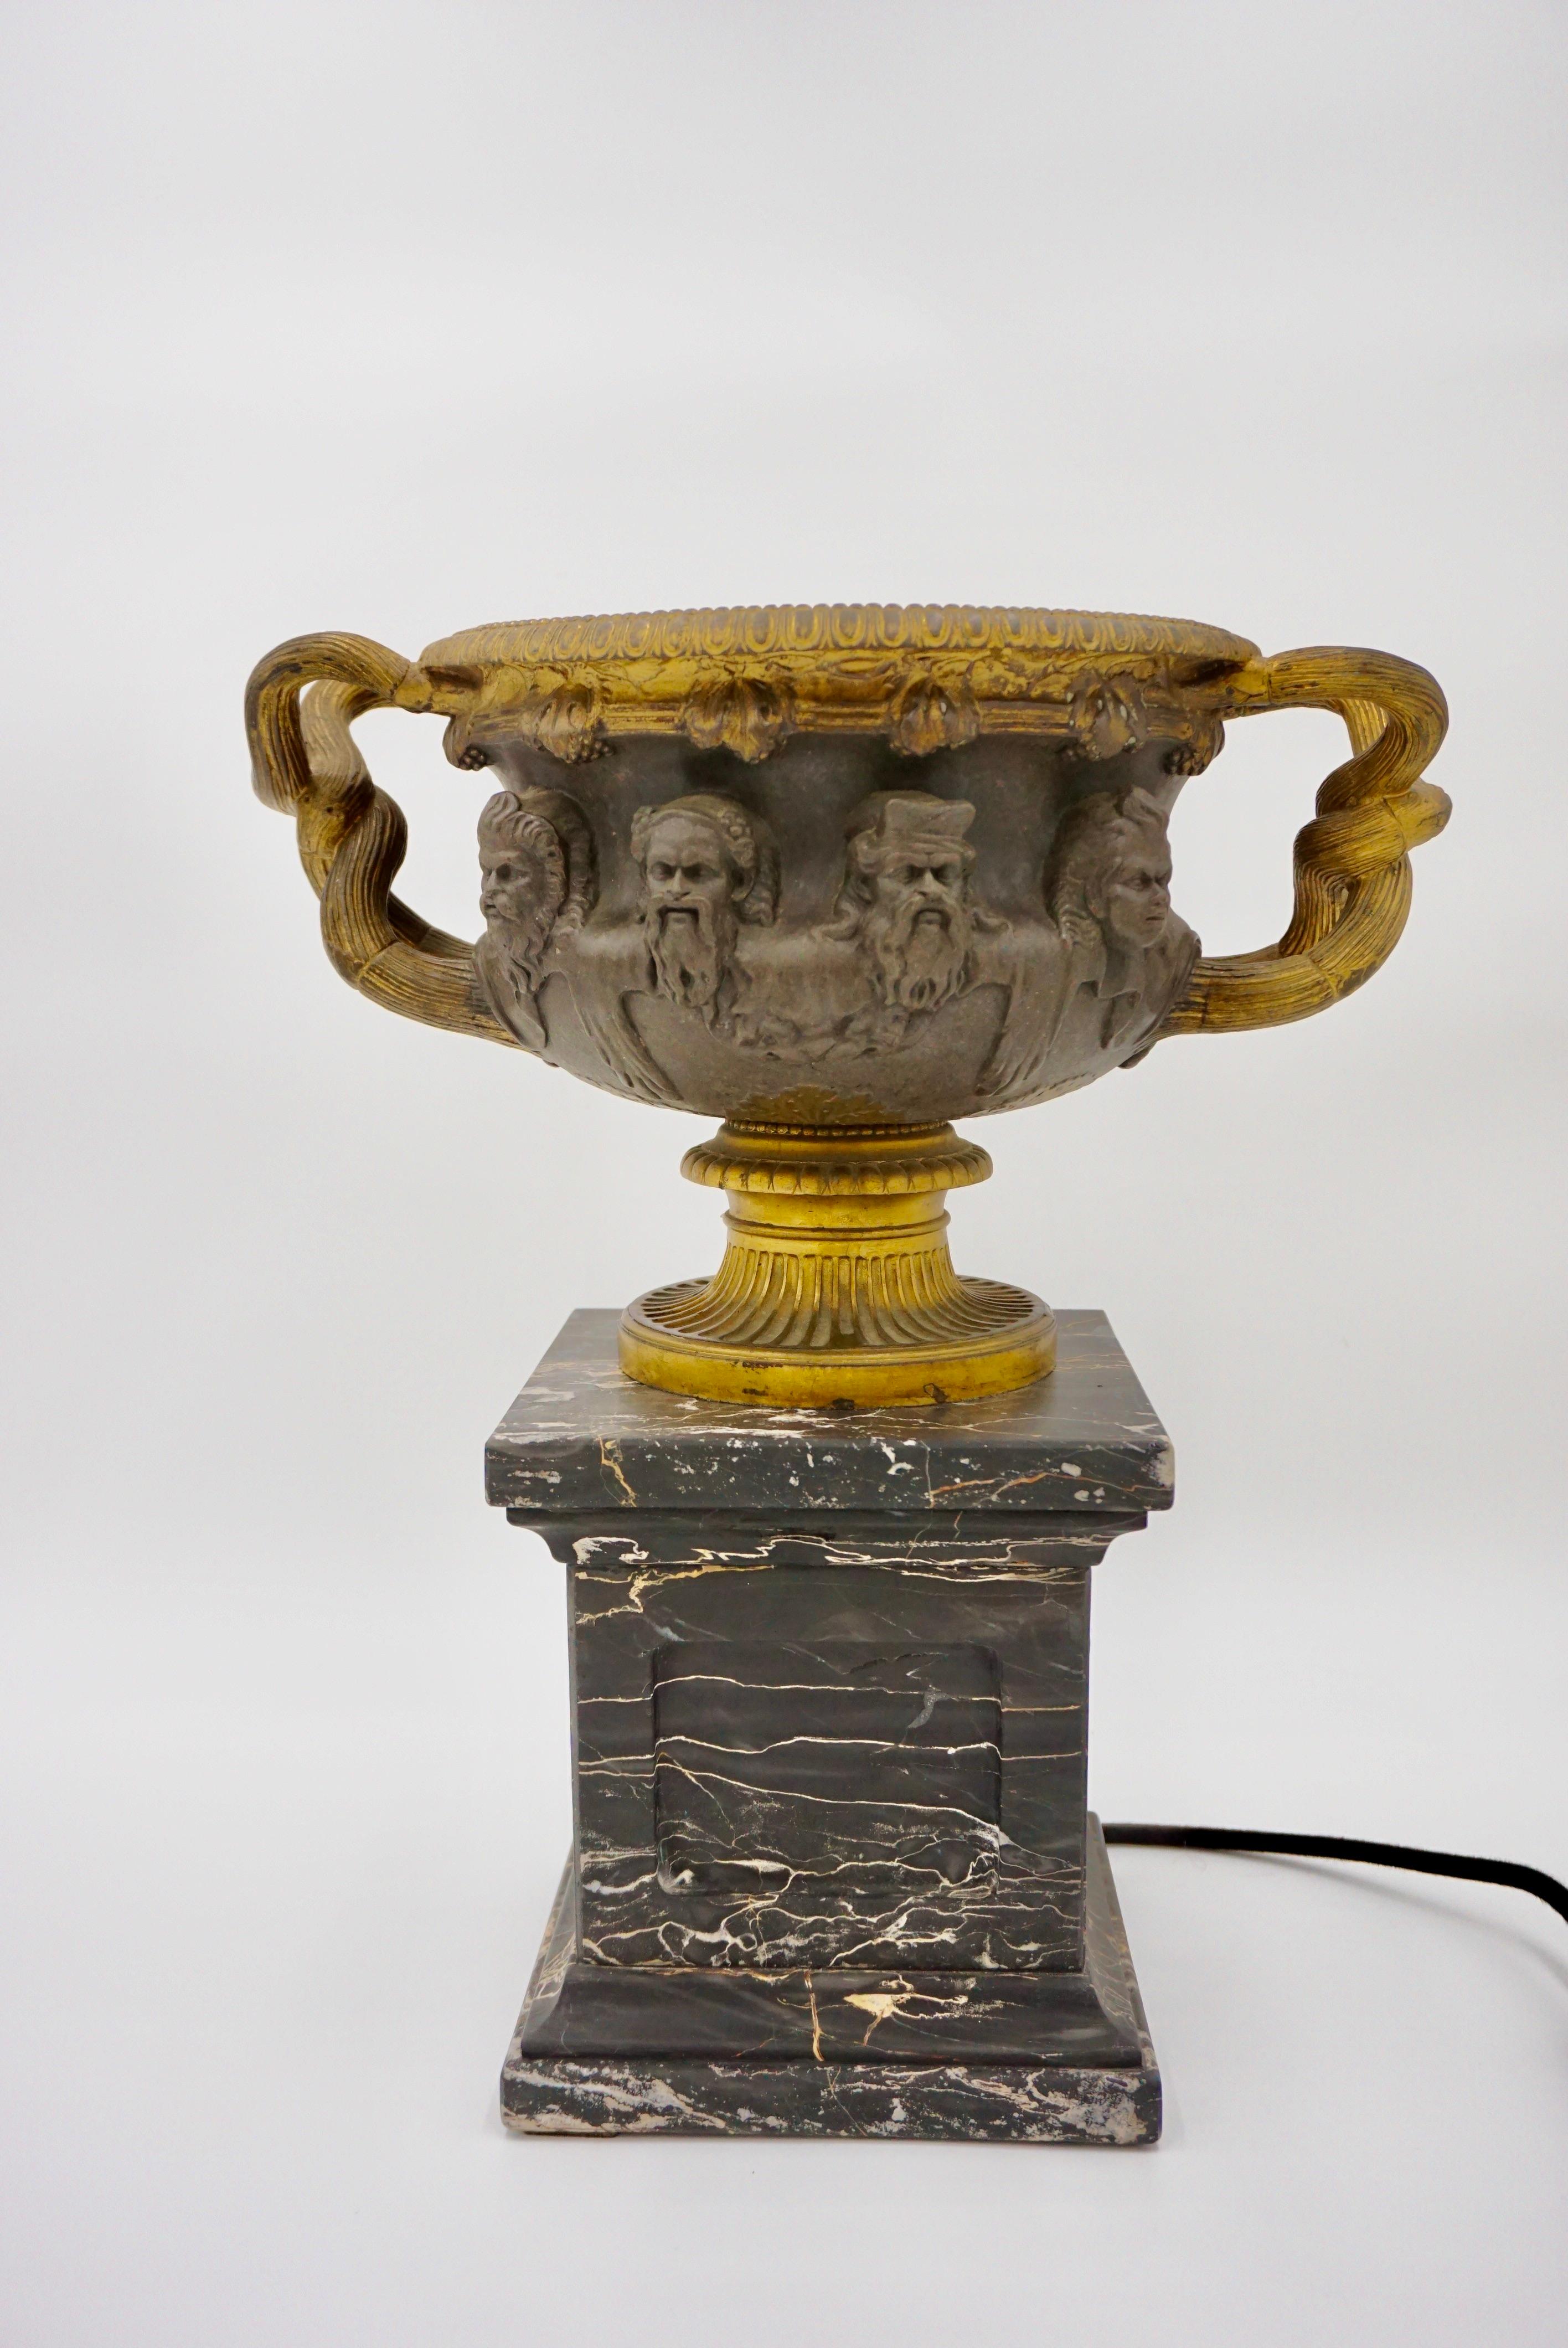 Grand vase-lampe 'Warwick' en bronze doré par Barbedienne, Paris vers 1860, monté sur un piédestal en marbre portoro.
patine fine et originale 
lampe led 4w 230V
mesures : 35 X 23 cm, Hauteur : 39cm ; le vase : 35 x 23cm hauteur : 20cm ; le socle